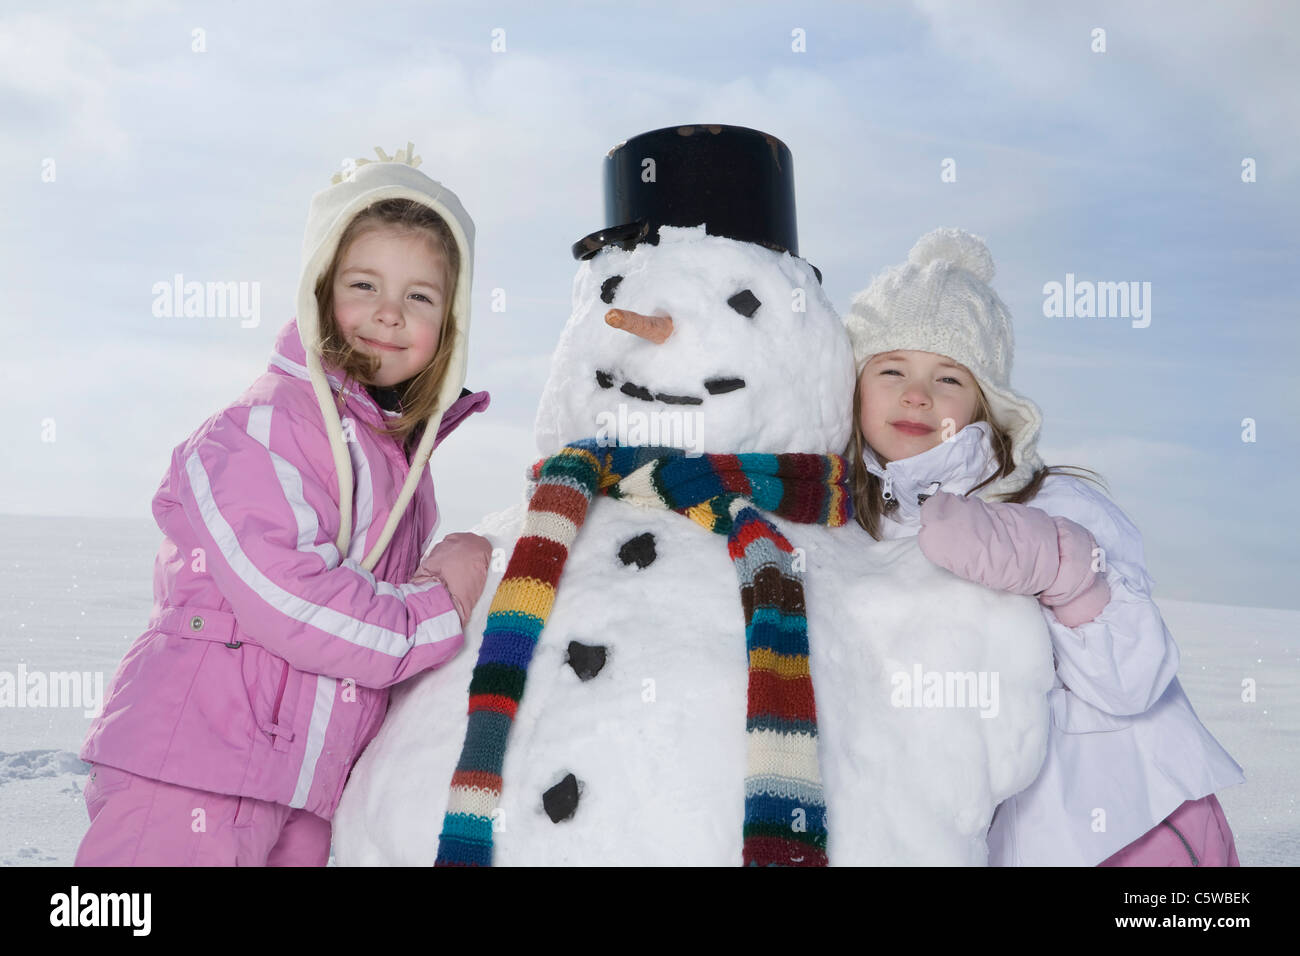 Germany, Bavaria, Munich, deux filles (4-5) (8-9) standing next to snowman, smiling, portrait Banque D'Images